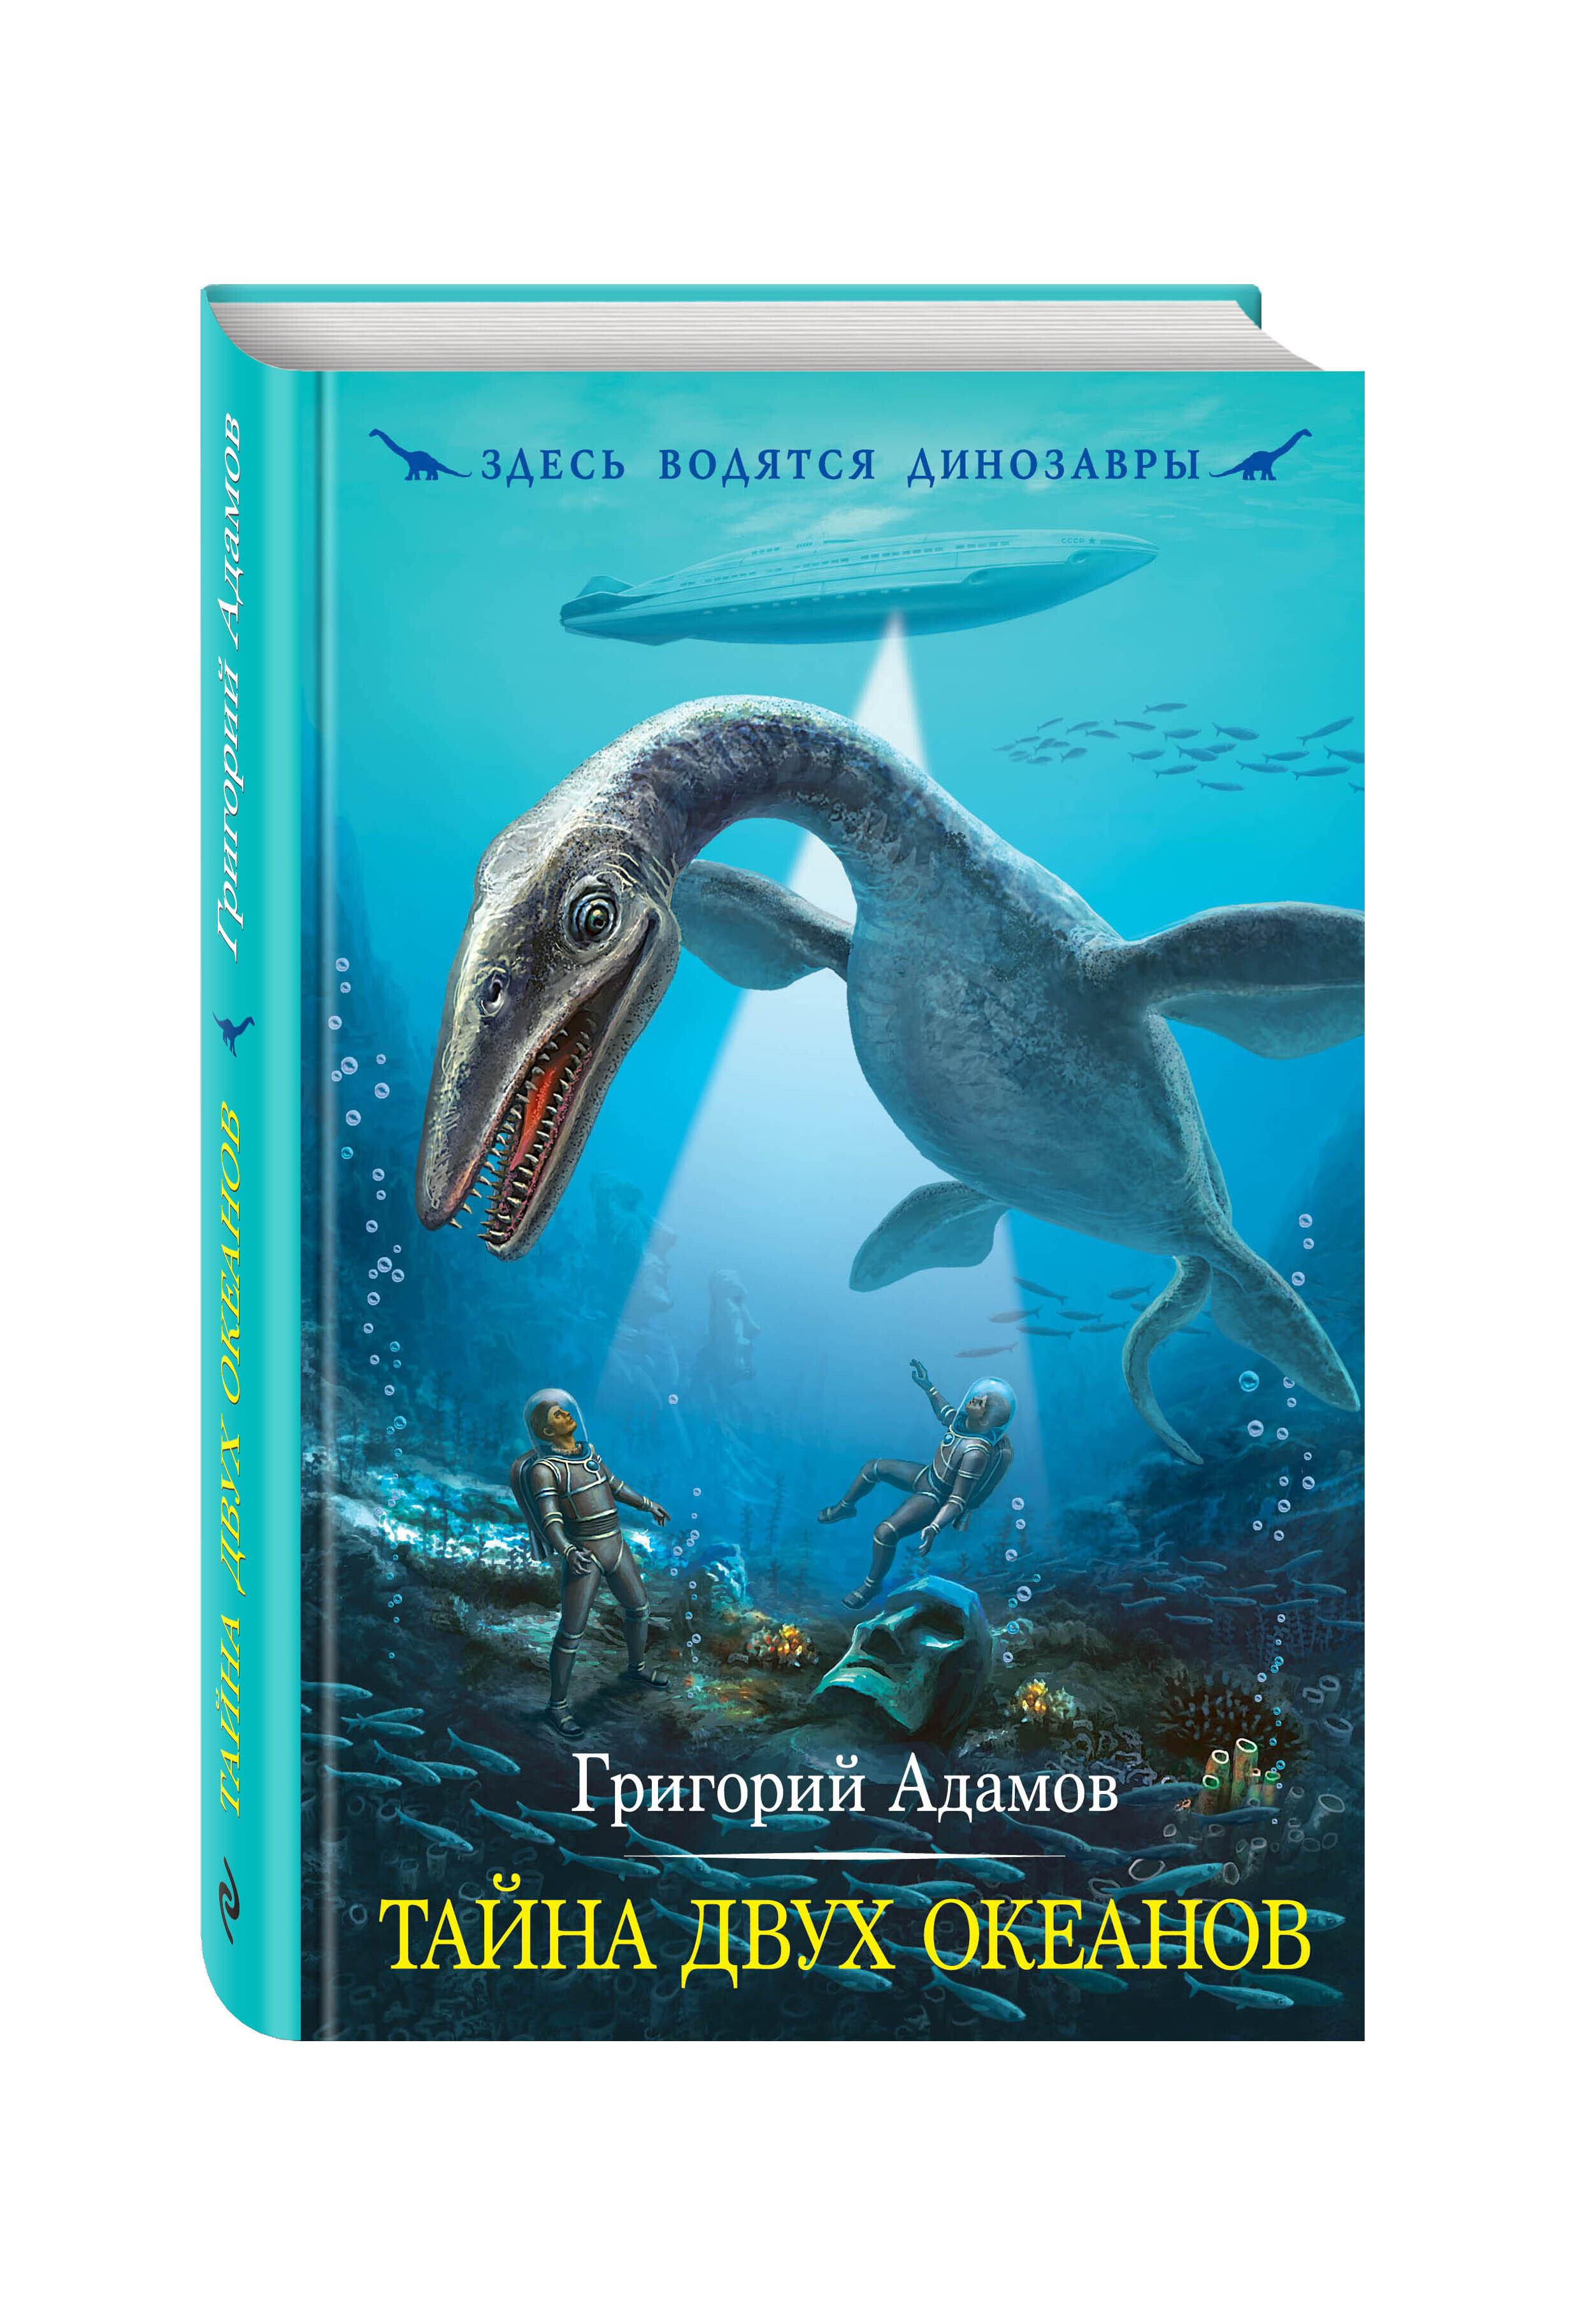 Адамов книги купить. Здесь водятся динозавры тайна двух океанов.